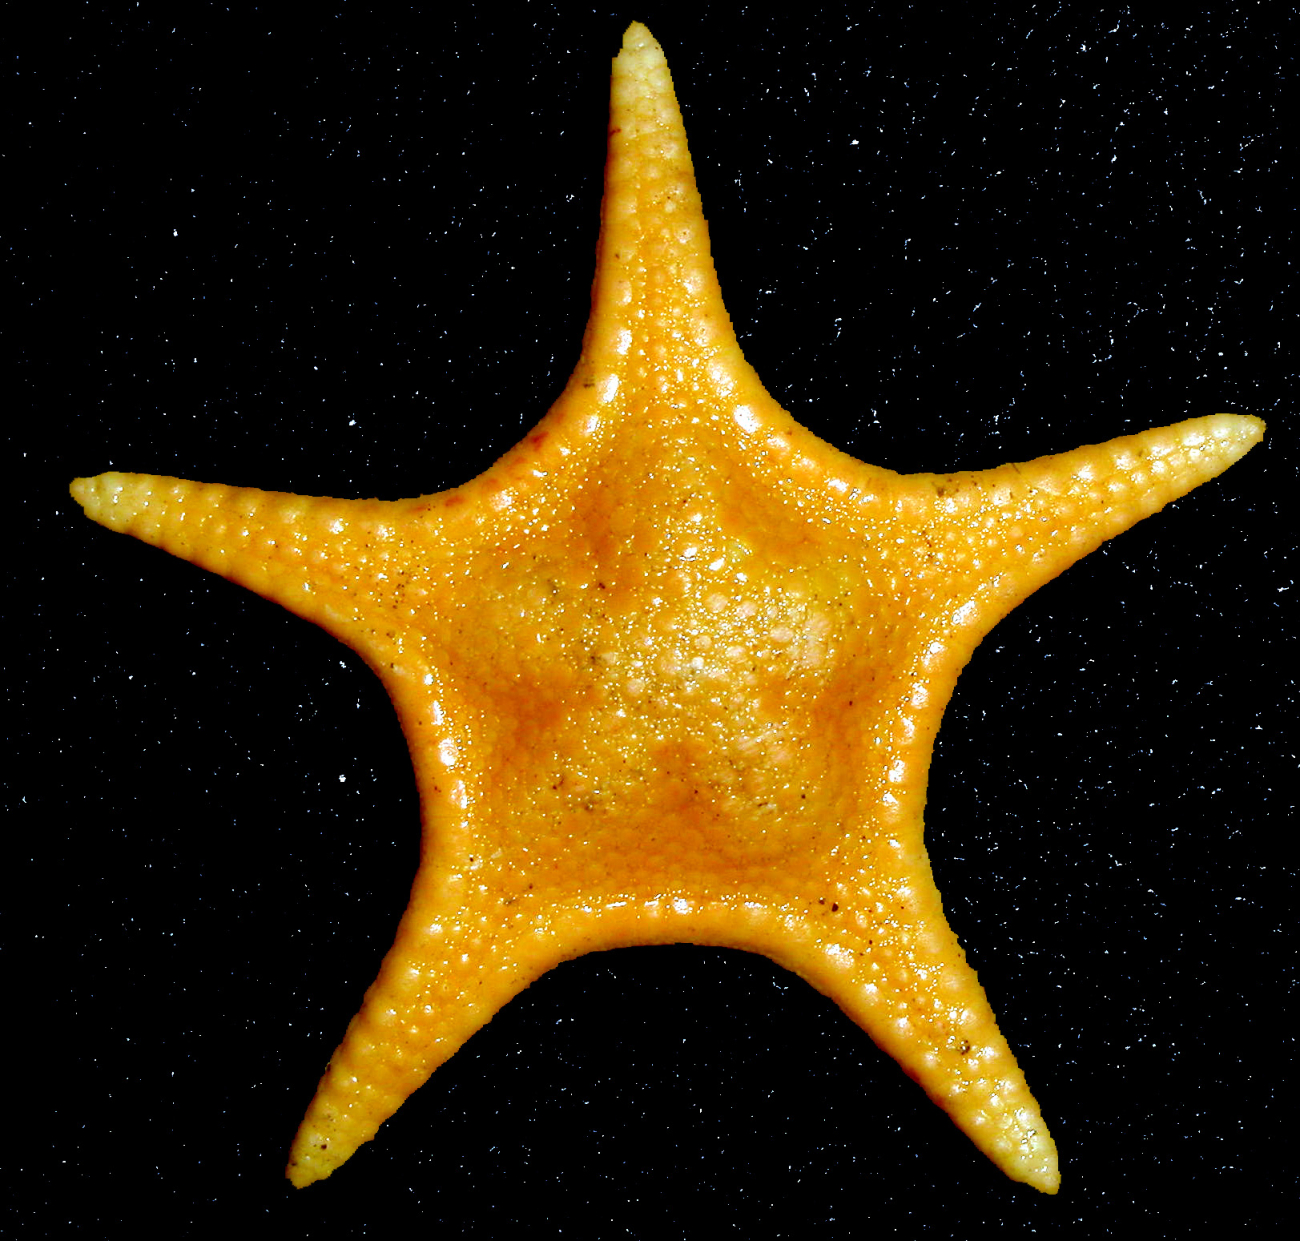 An Antarctic sea star, Pergamaster sp